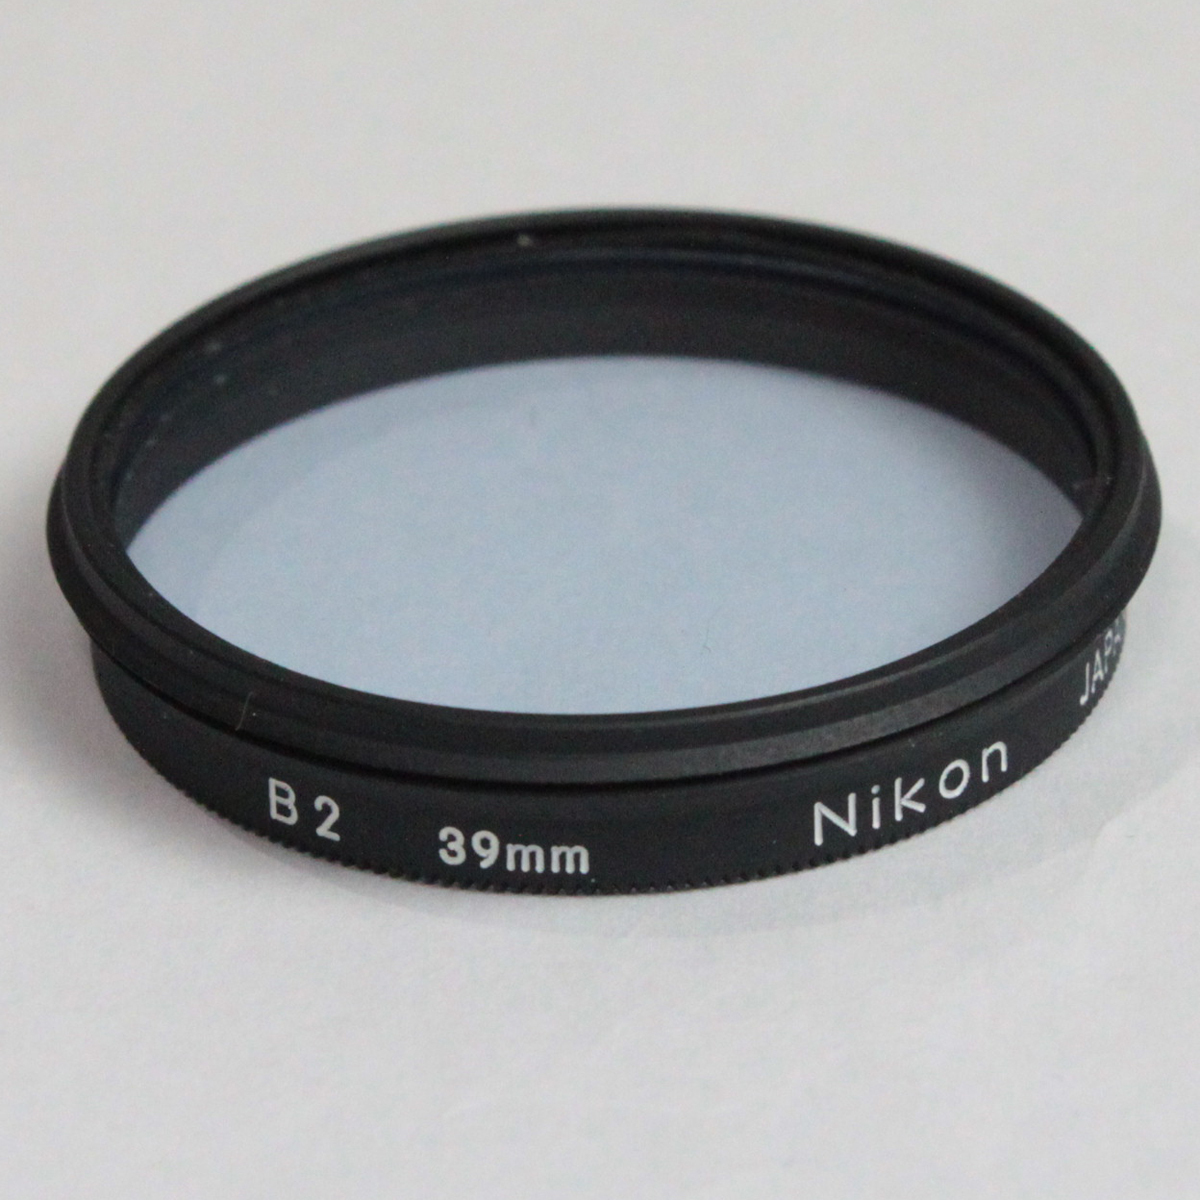 122476 【並品 ニコン フィルター】 Nikon 39mm ドロップインフィルター ND4X・A2・B2・O56 4枚セット_画像7